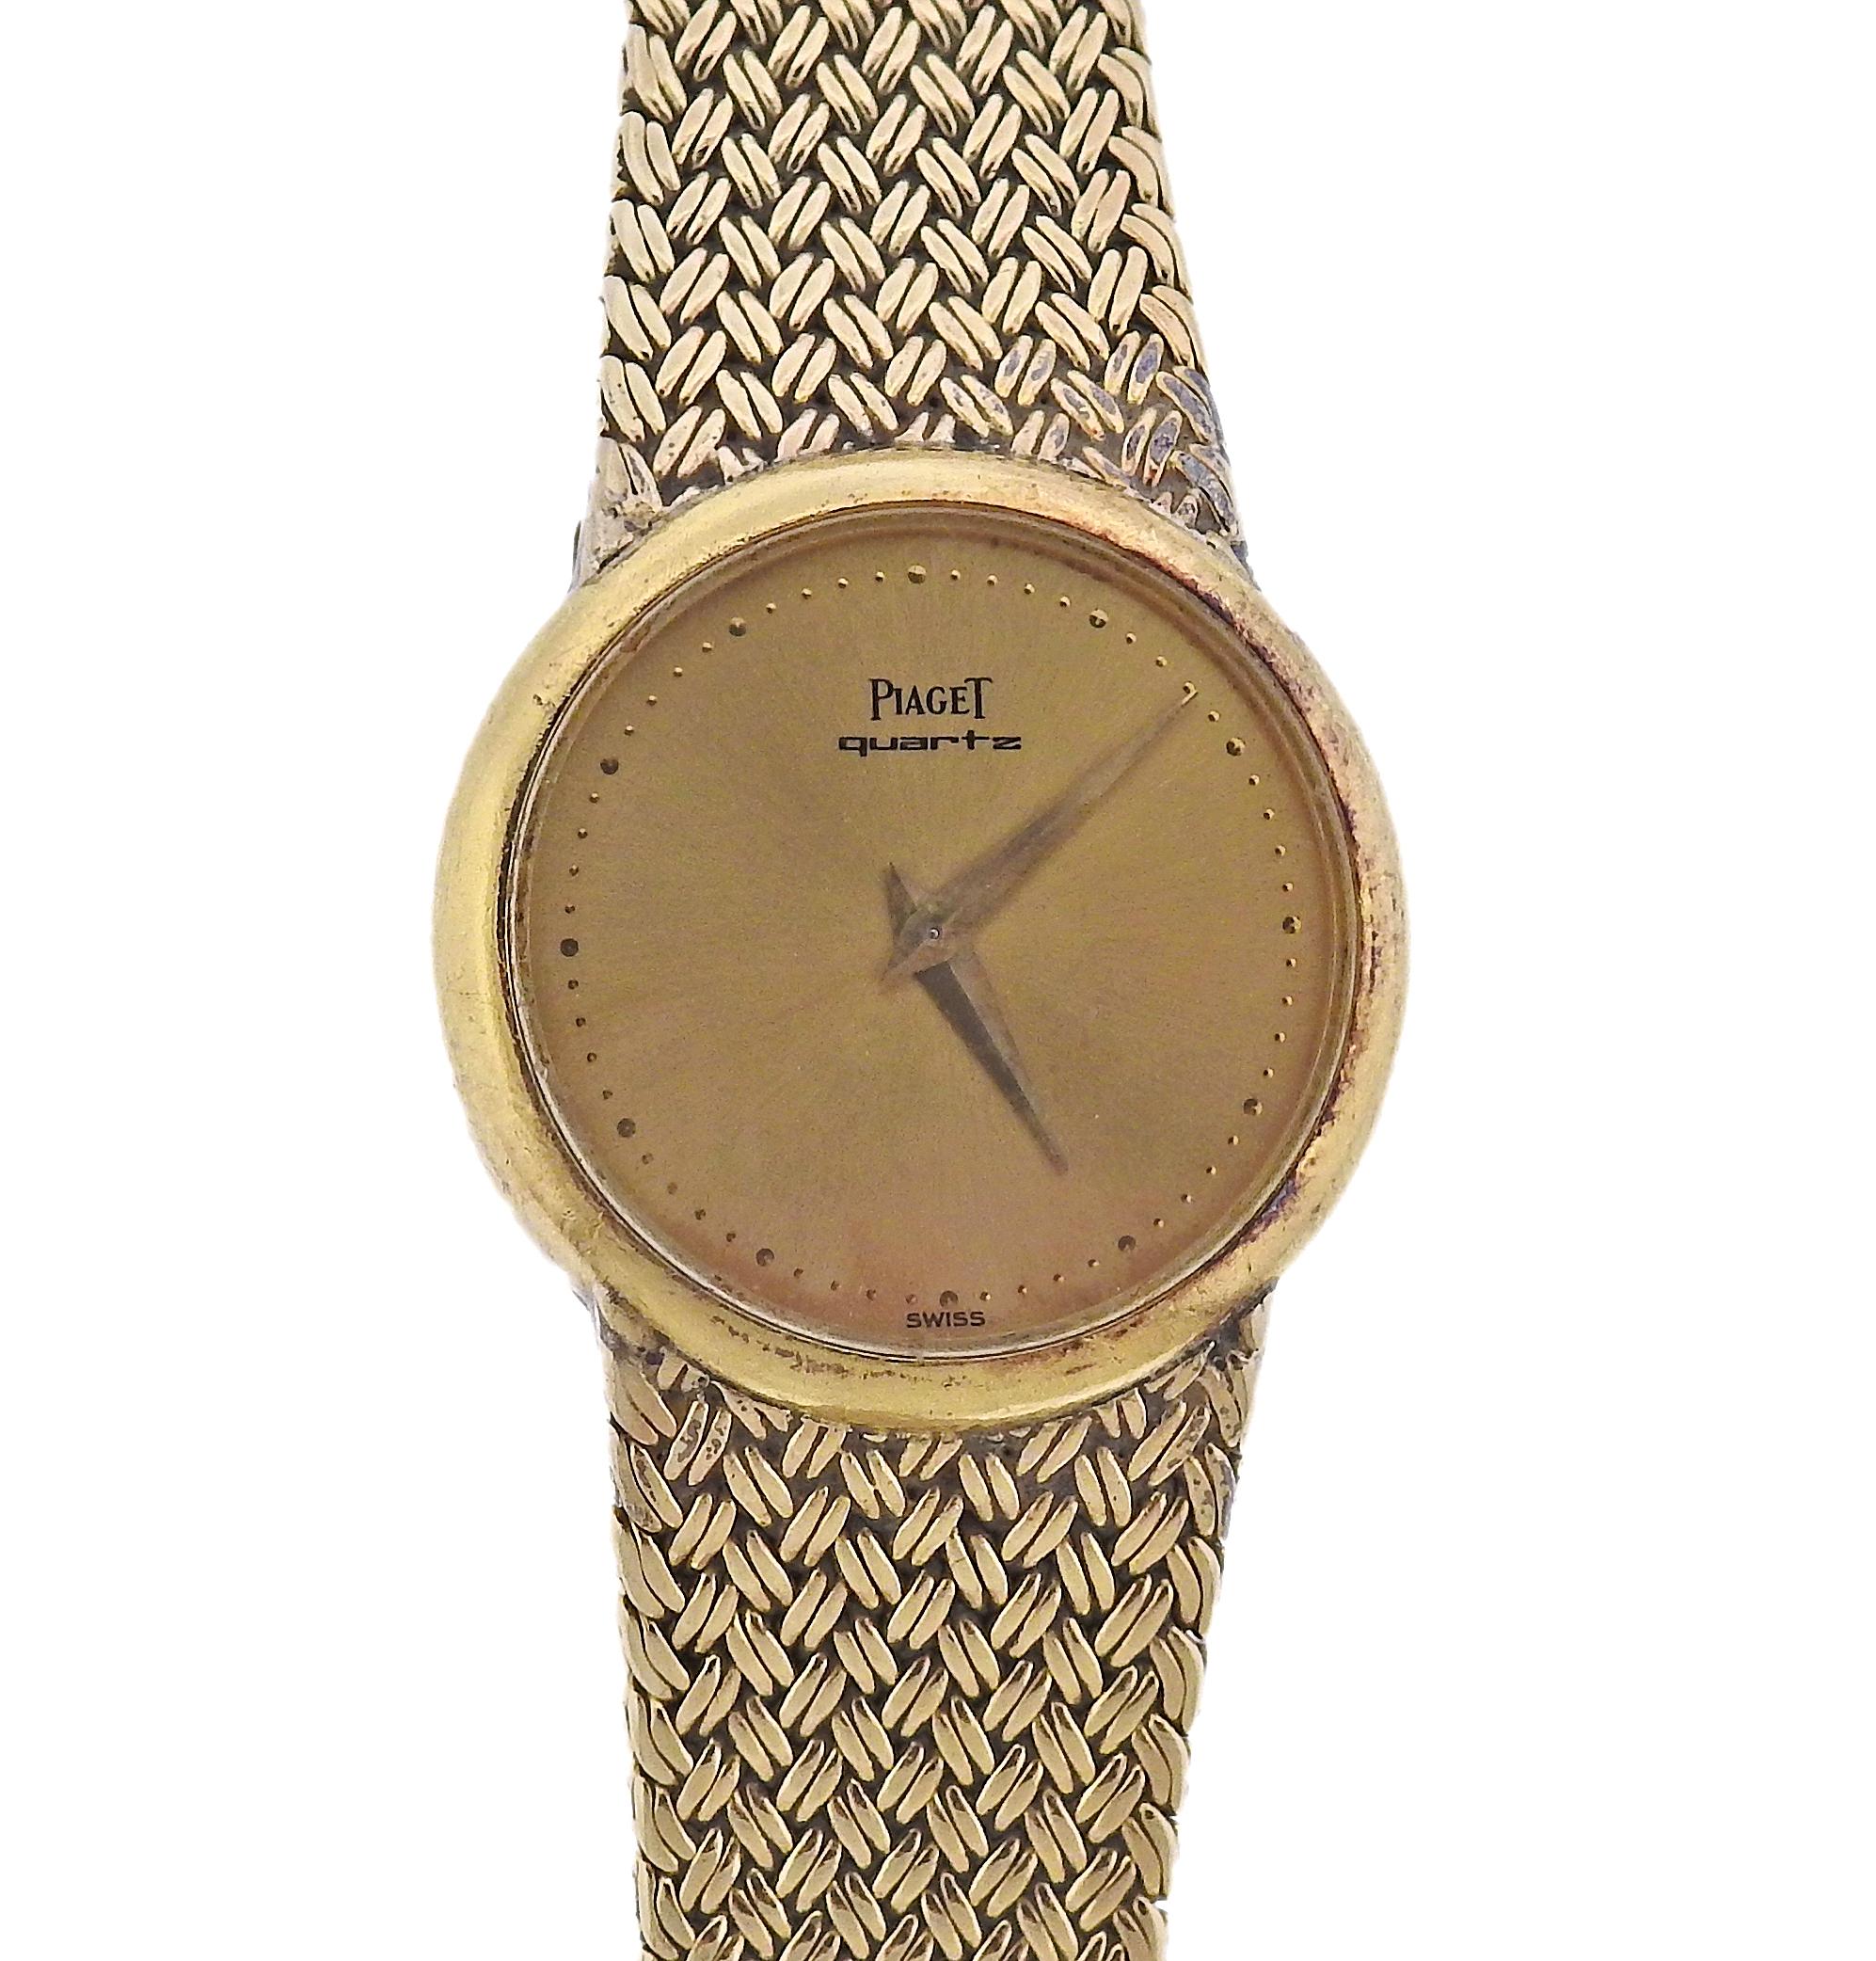 Vintage 14k gold Piaget backwind watch. Gold tone dial signed Piaget. Case is 25mm, bracelet is 6